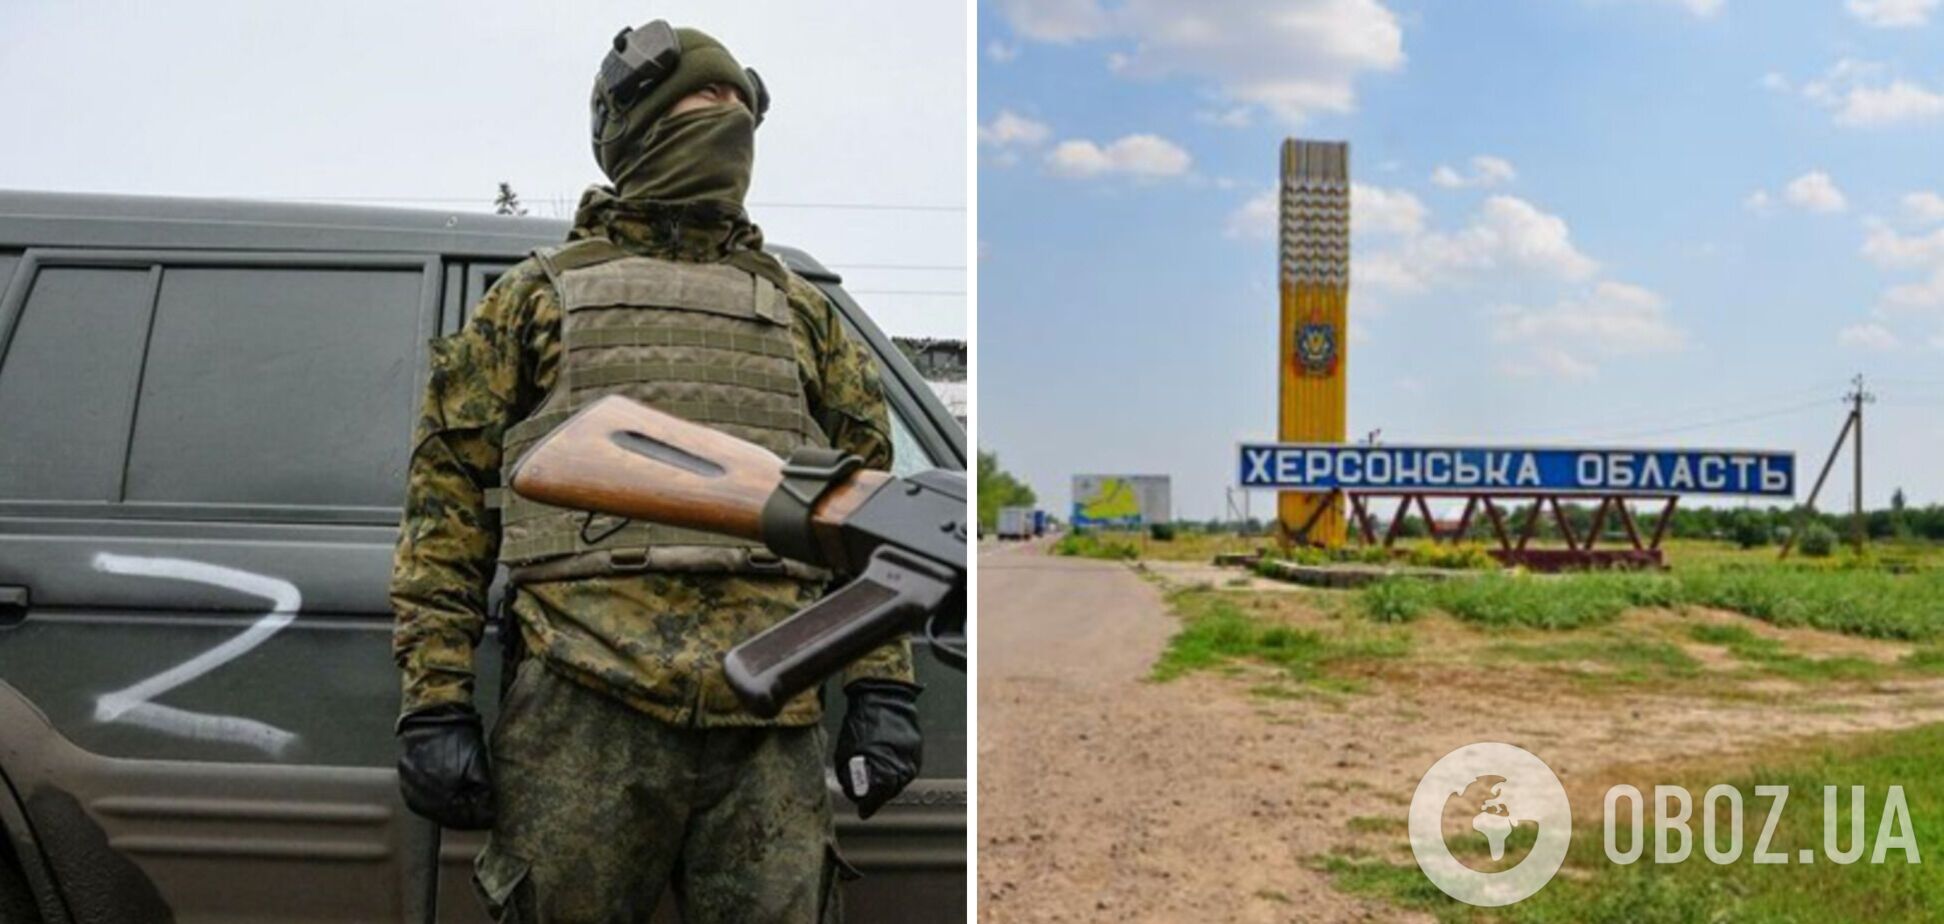 'Окупанти нажахані': Гуменюк пояснила, чому війська РФ влаштували евакуацію населення на Херсонщині